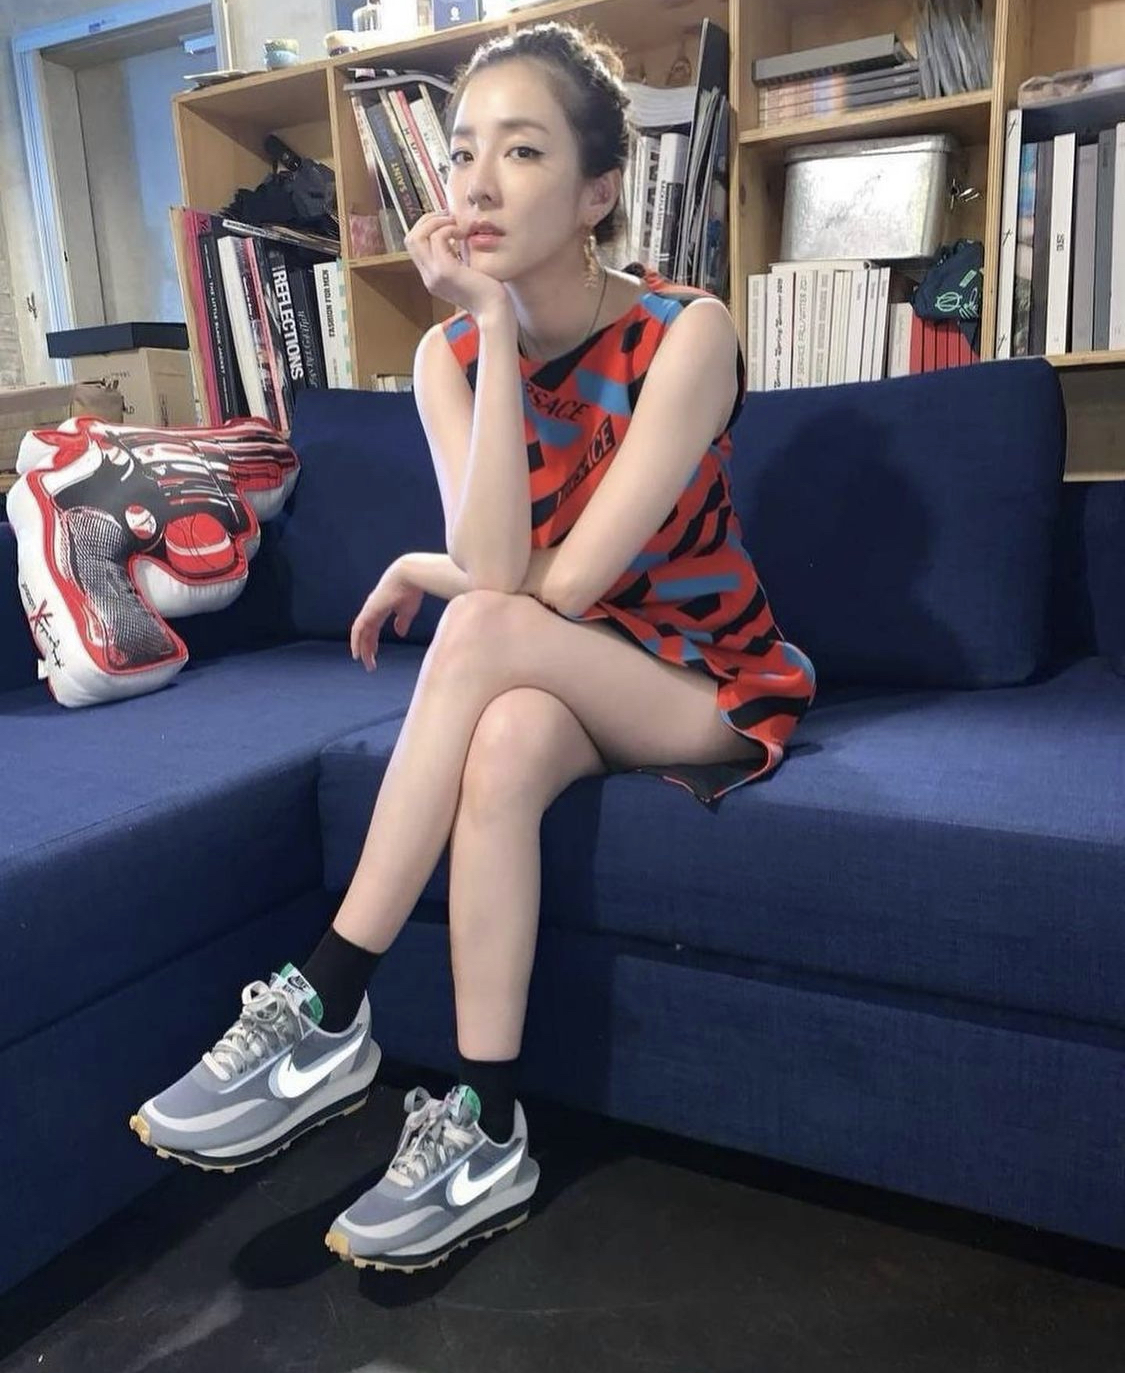 Tay chân của Dara vô cùng nhỏ nhắn, chứng tỏ quá trình ăn kiêng rất nghiêm ngặt.